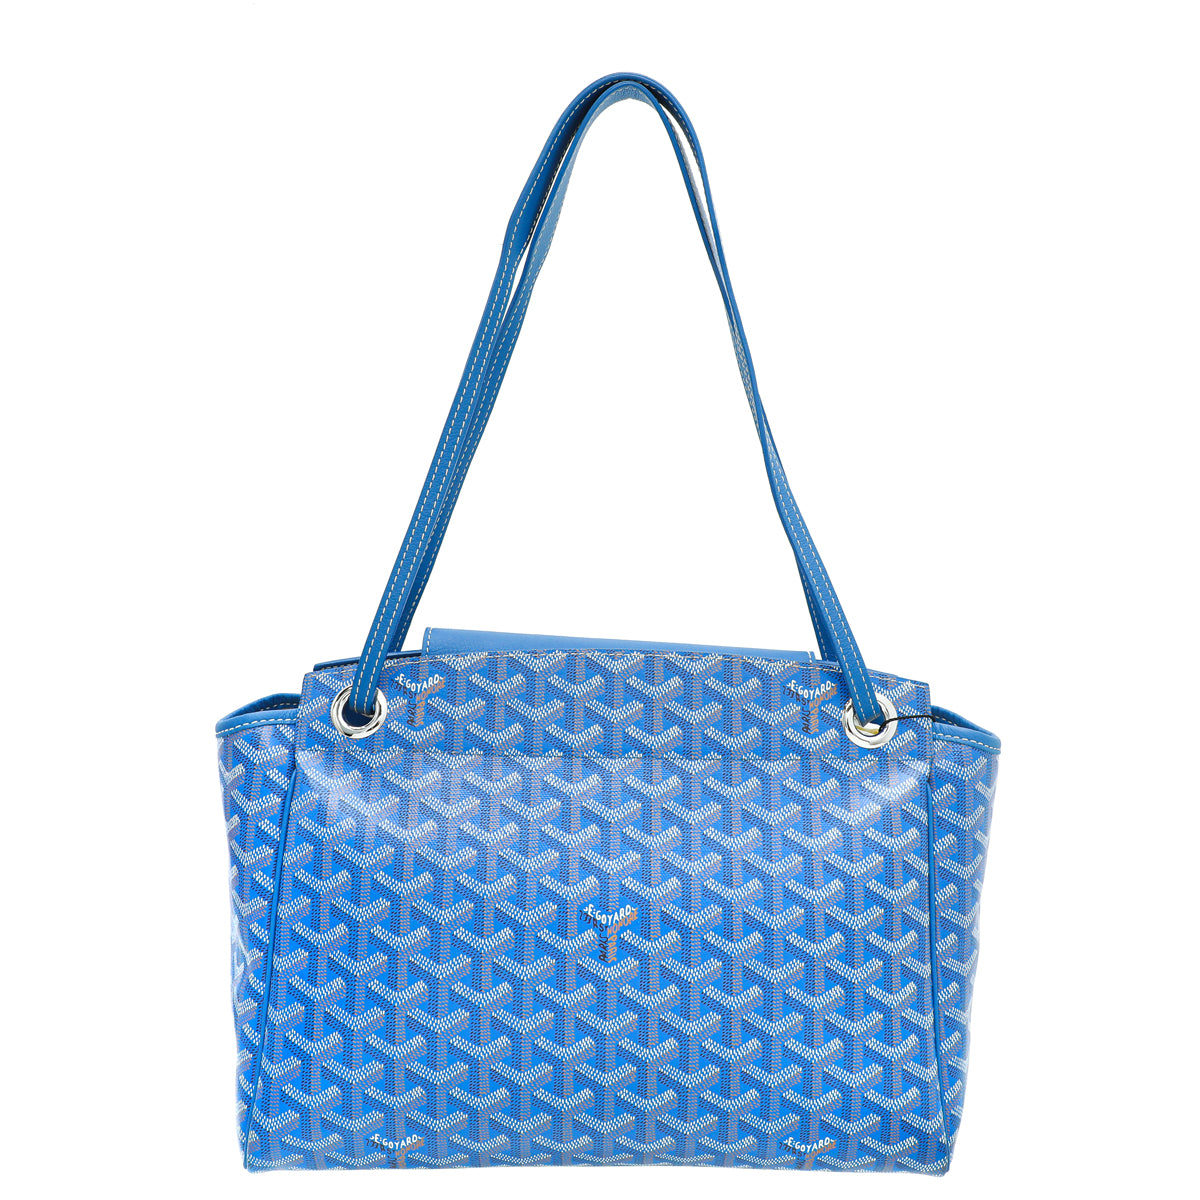 Goyard Goyardine Yona PM - Blue Shoulder Bags, Handbags - GOY25347